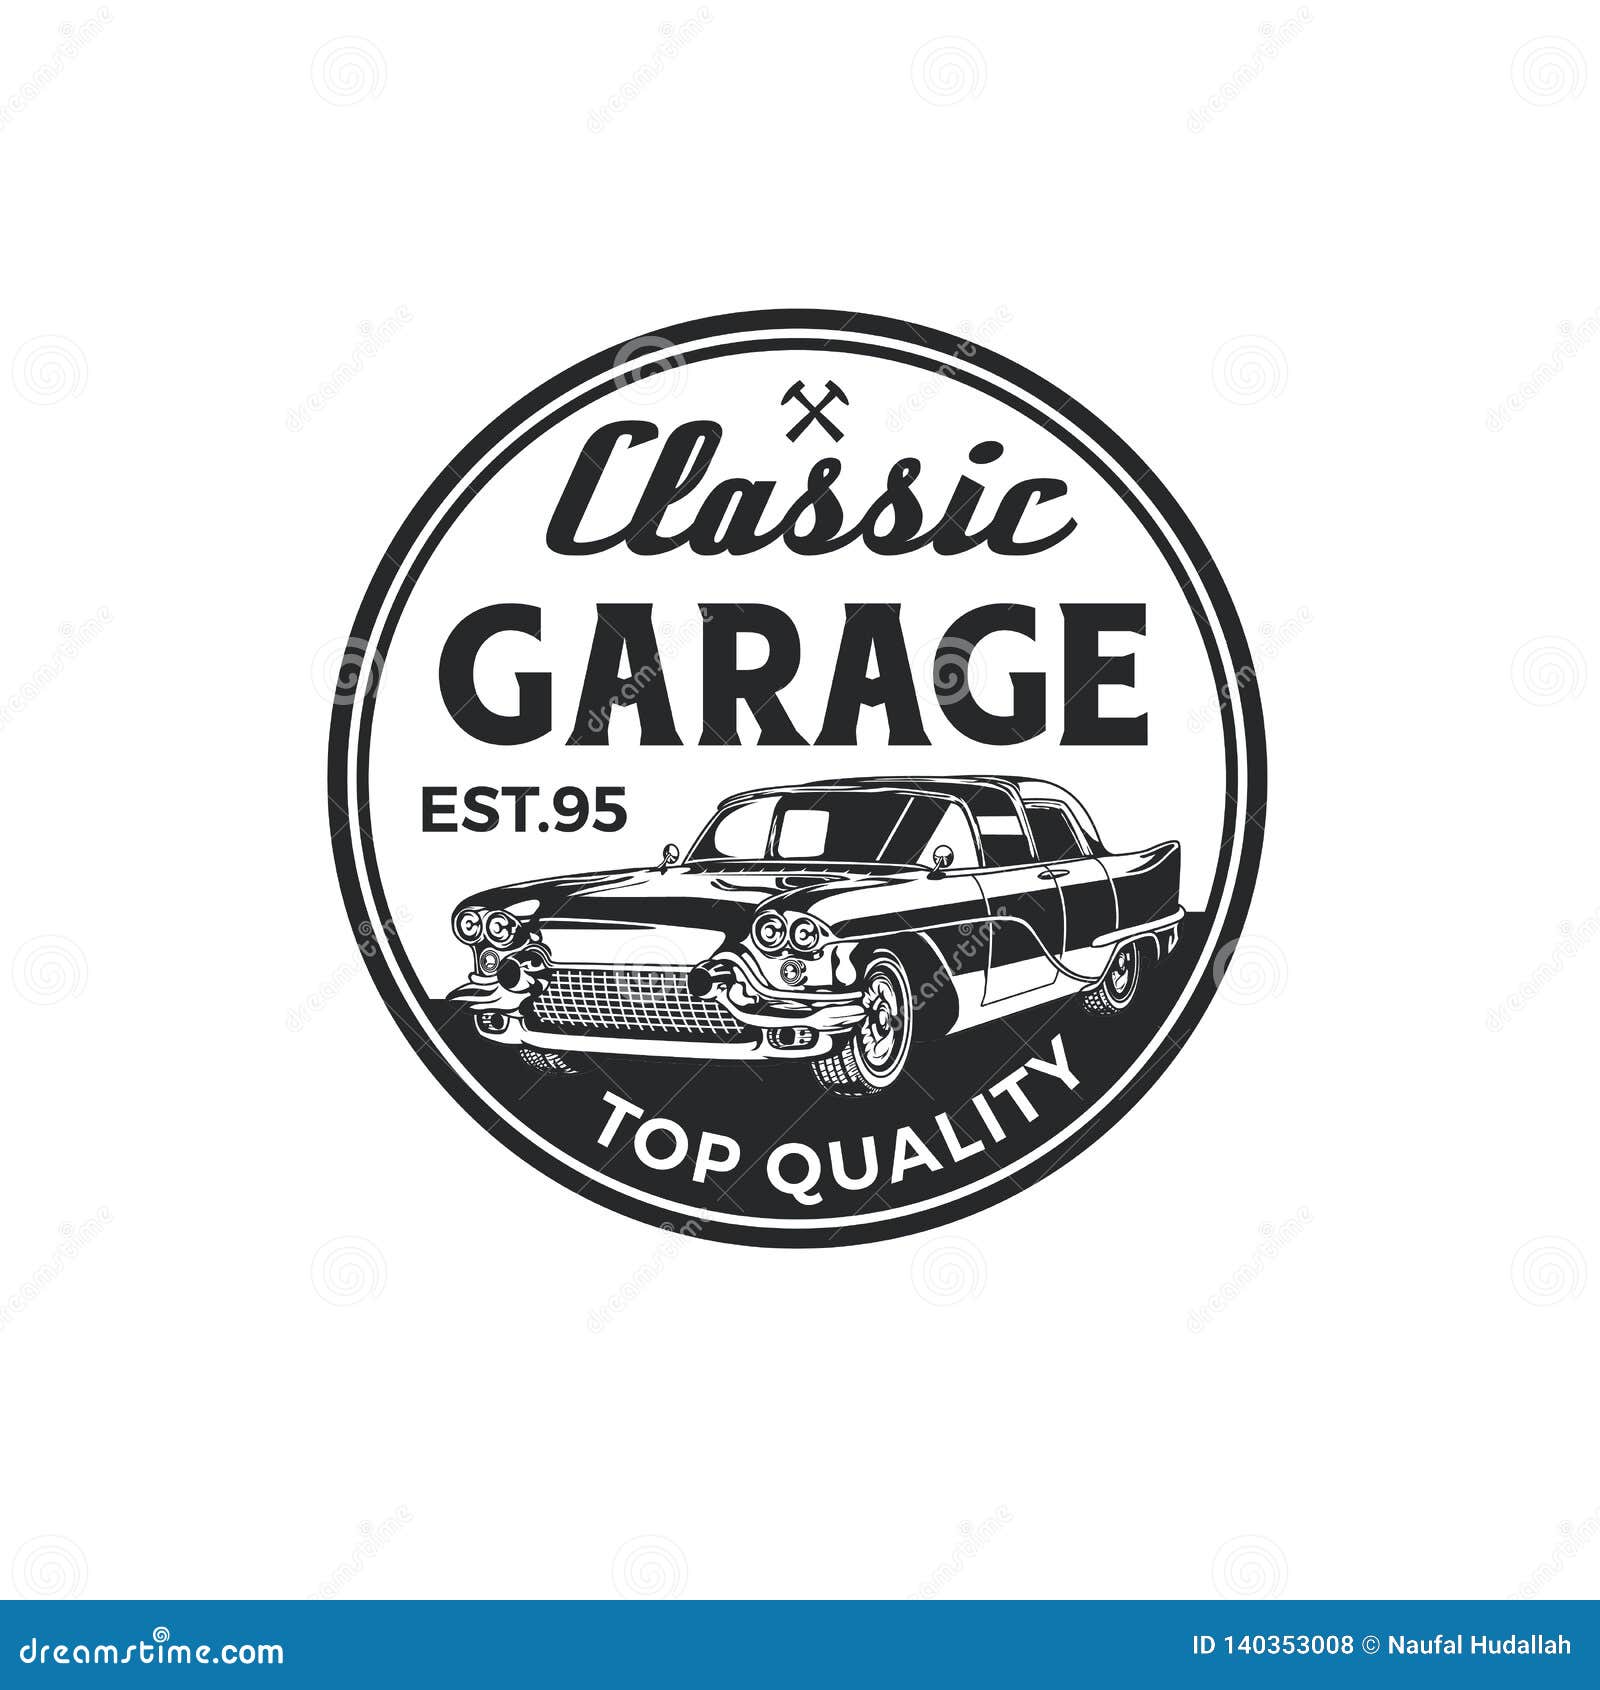 Vintage Classic Car Repair Garage Logo Badge Design. Old Retro Style ...